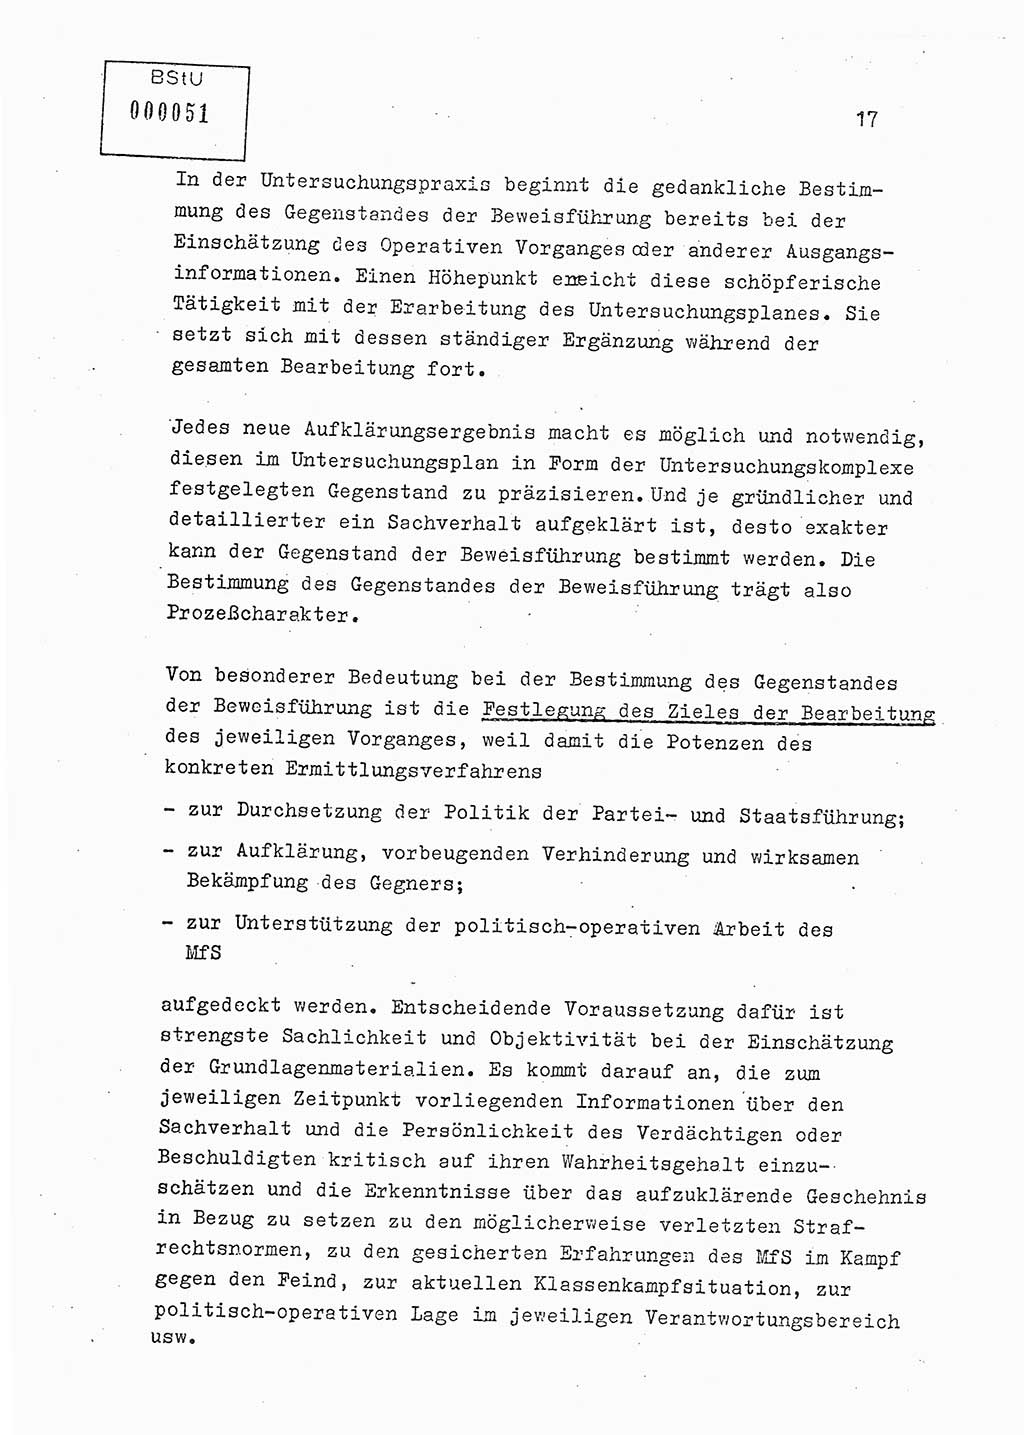 Lektion Ministerium für Staatssicherheit (MfS) [Deutsche Demokratische Republik (DDR)], Hauptabteilung (HA) Ⅸ, Berlin 1979, Seite 17 (Lekt. Bew.-Fü. EV MfS DDR HA Ⅸ 1979, S. 17)